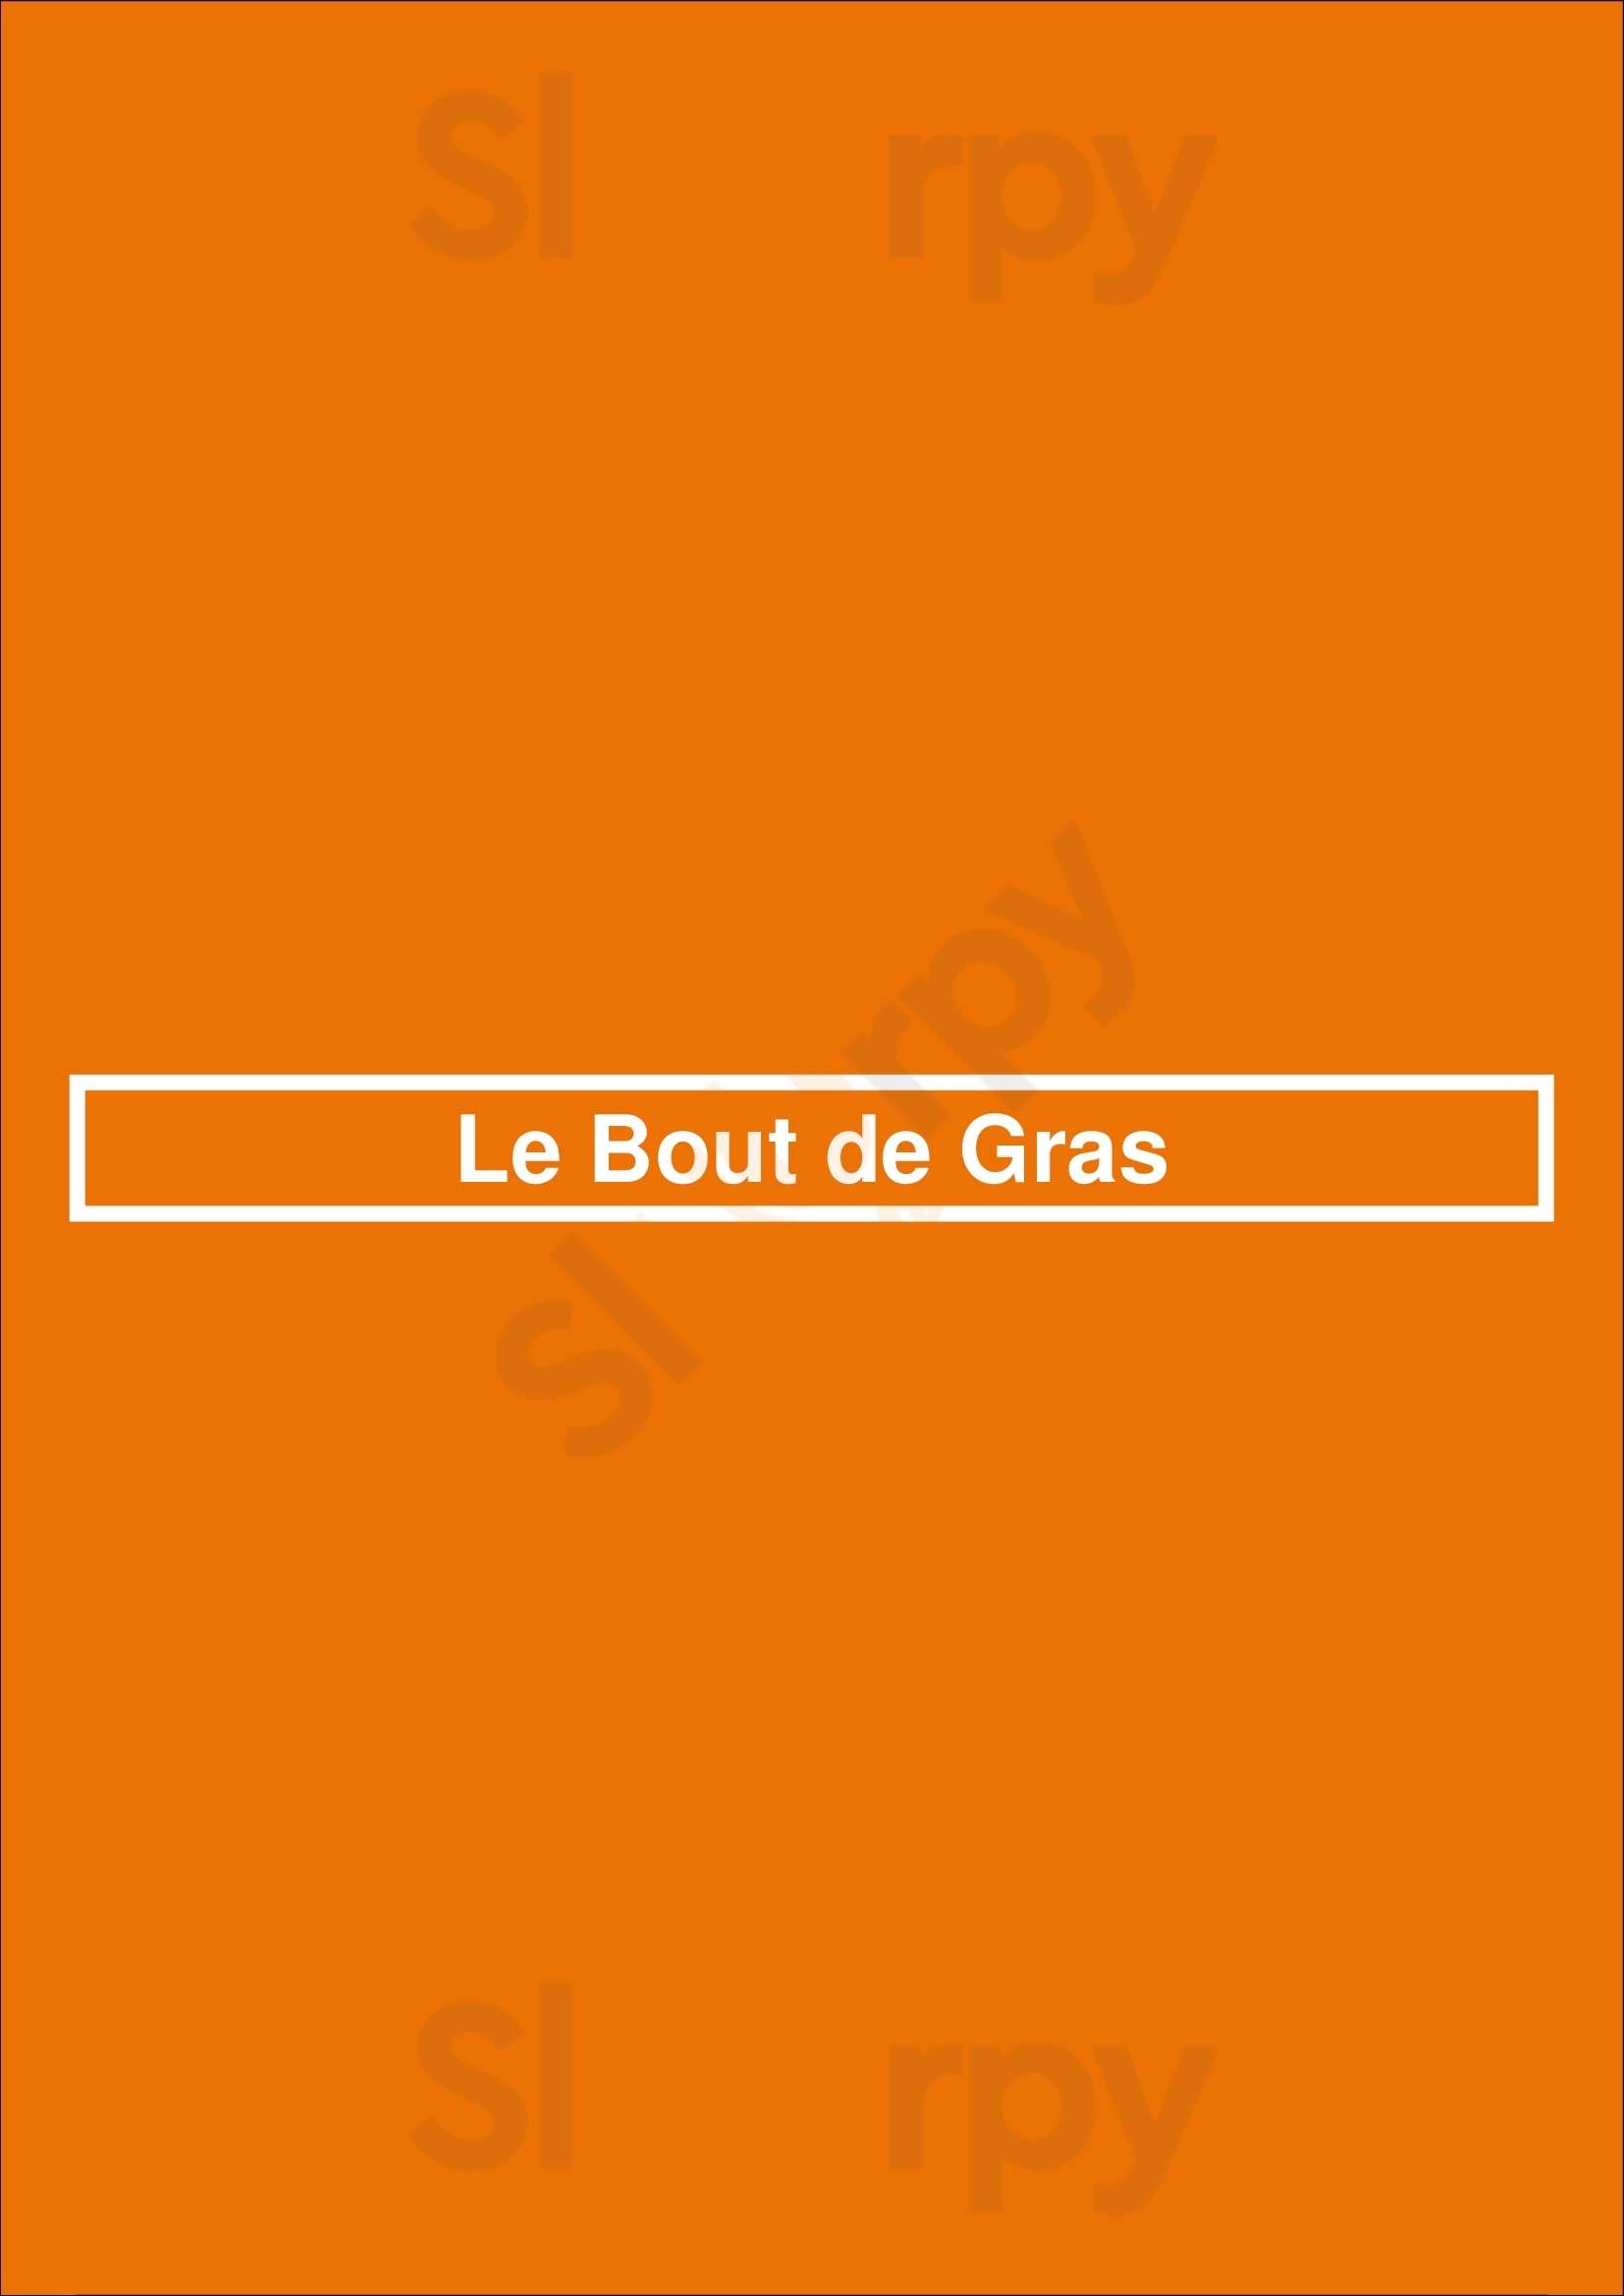 Le Bout De Gras Bruxelles Menu - 1